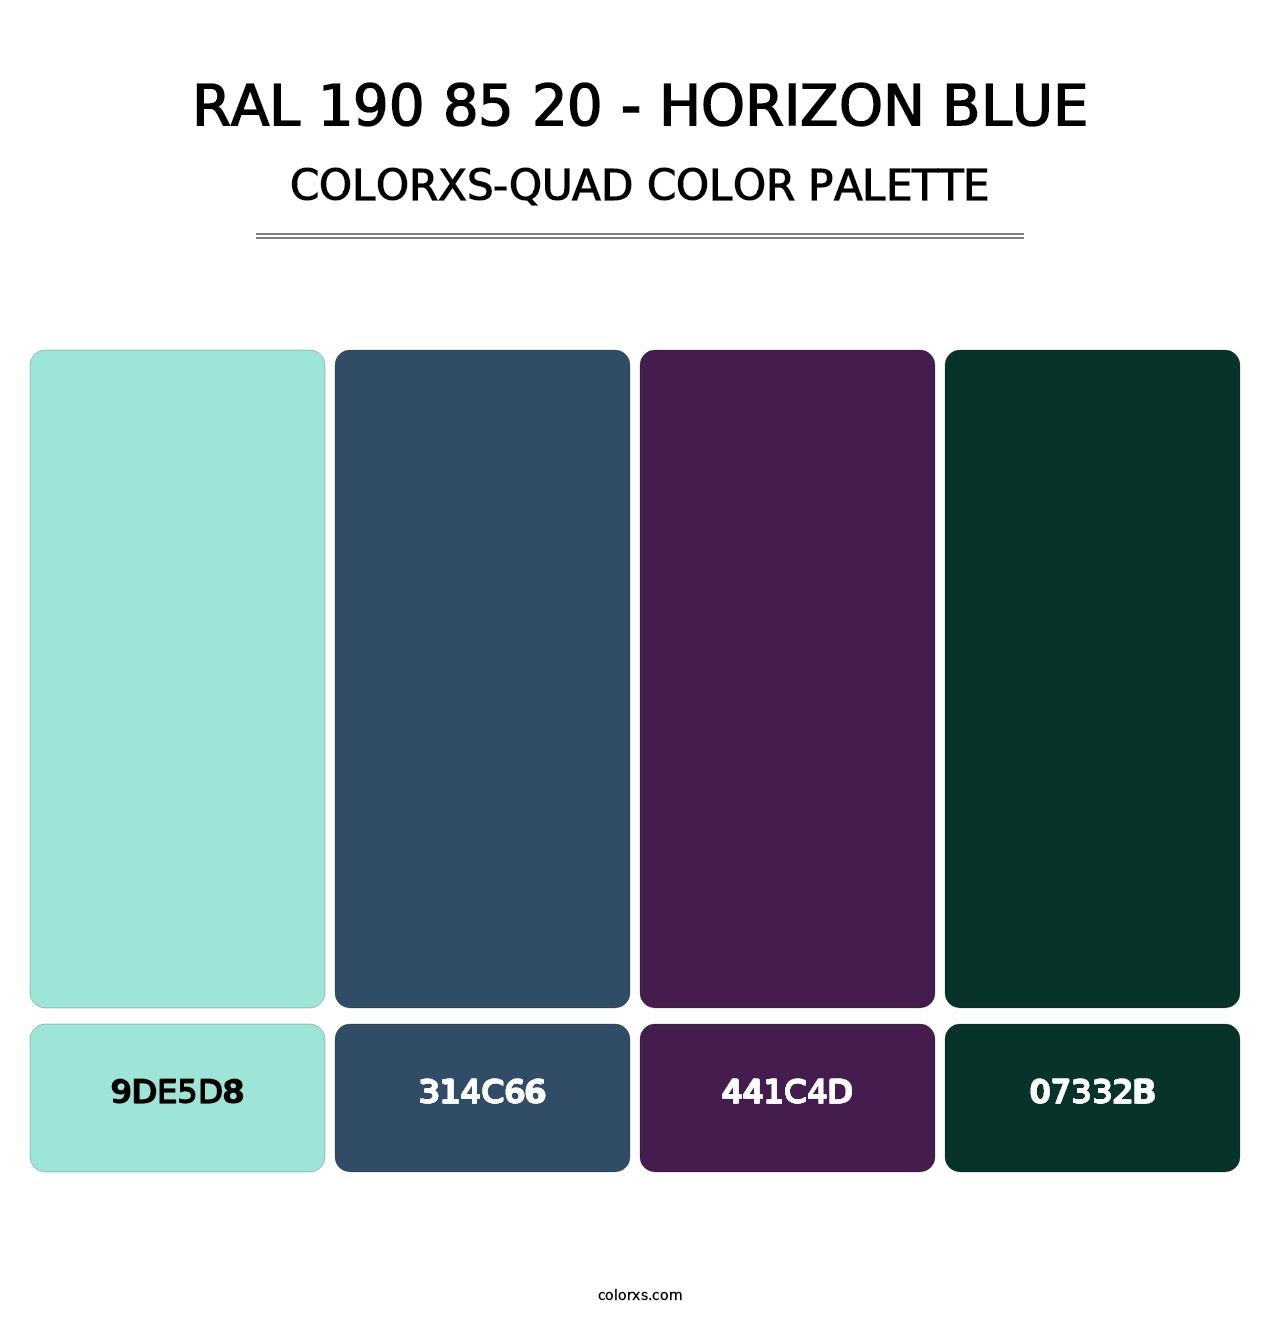 RAL 190 85 20 - Horizon Blue - Colorxs Quad Palette